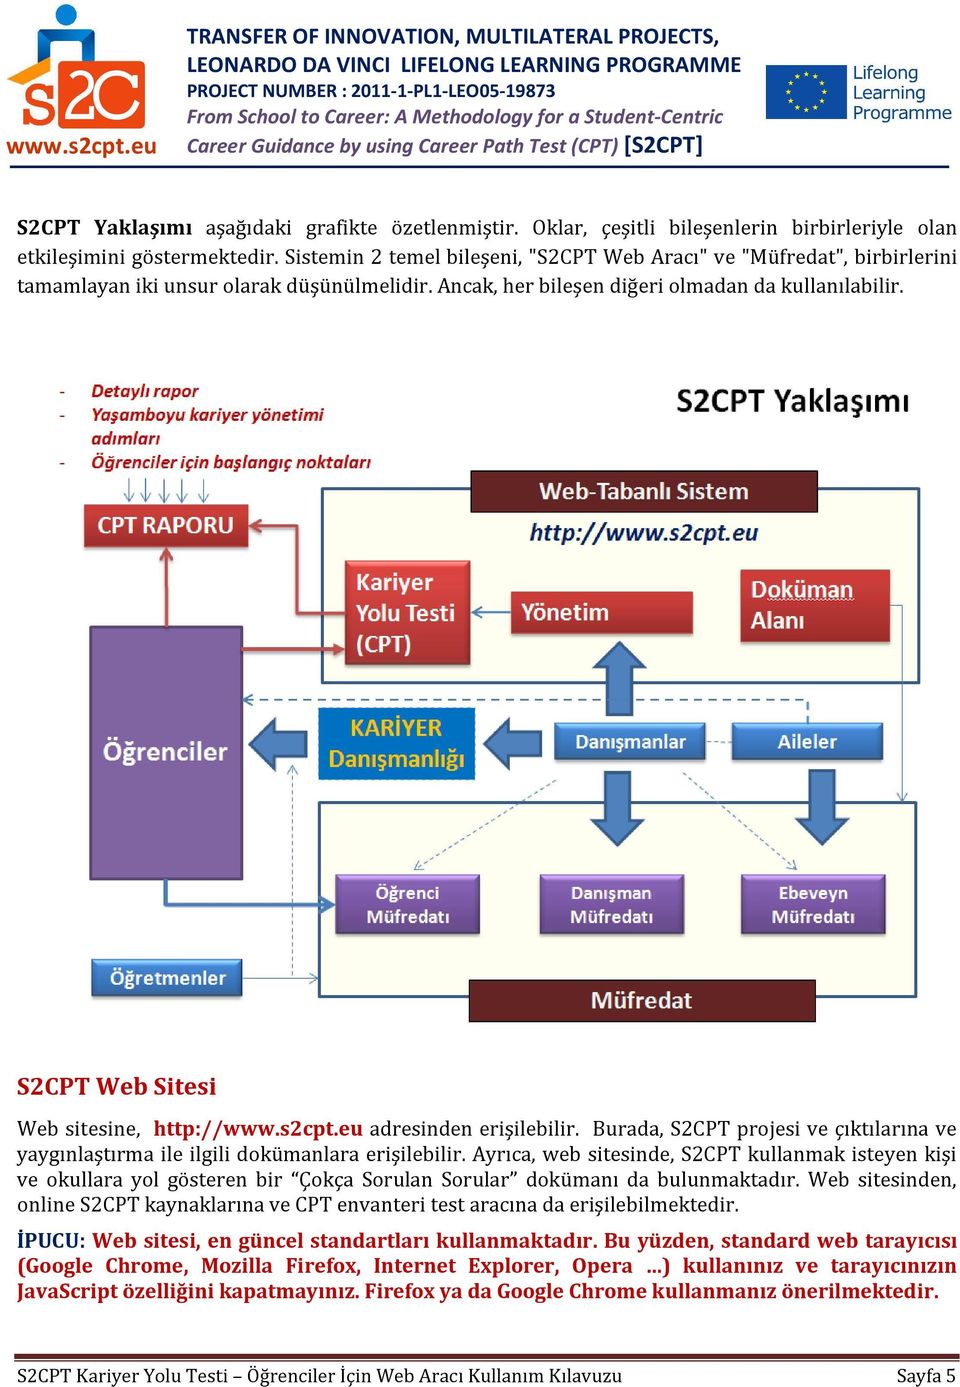 S2CPT Web Sitesi Web sitesine, http://www.s2cpt.eu adresinden erişilebilir. Burada, S2CPT projesi ve çıktılarına ve yaygınlaştırma ile ilgili dokümanlara erişilebilir.